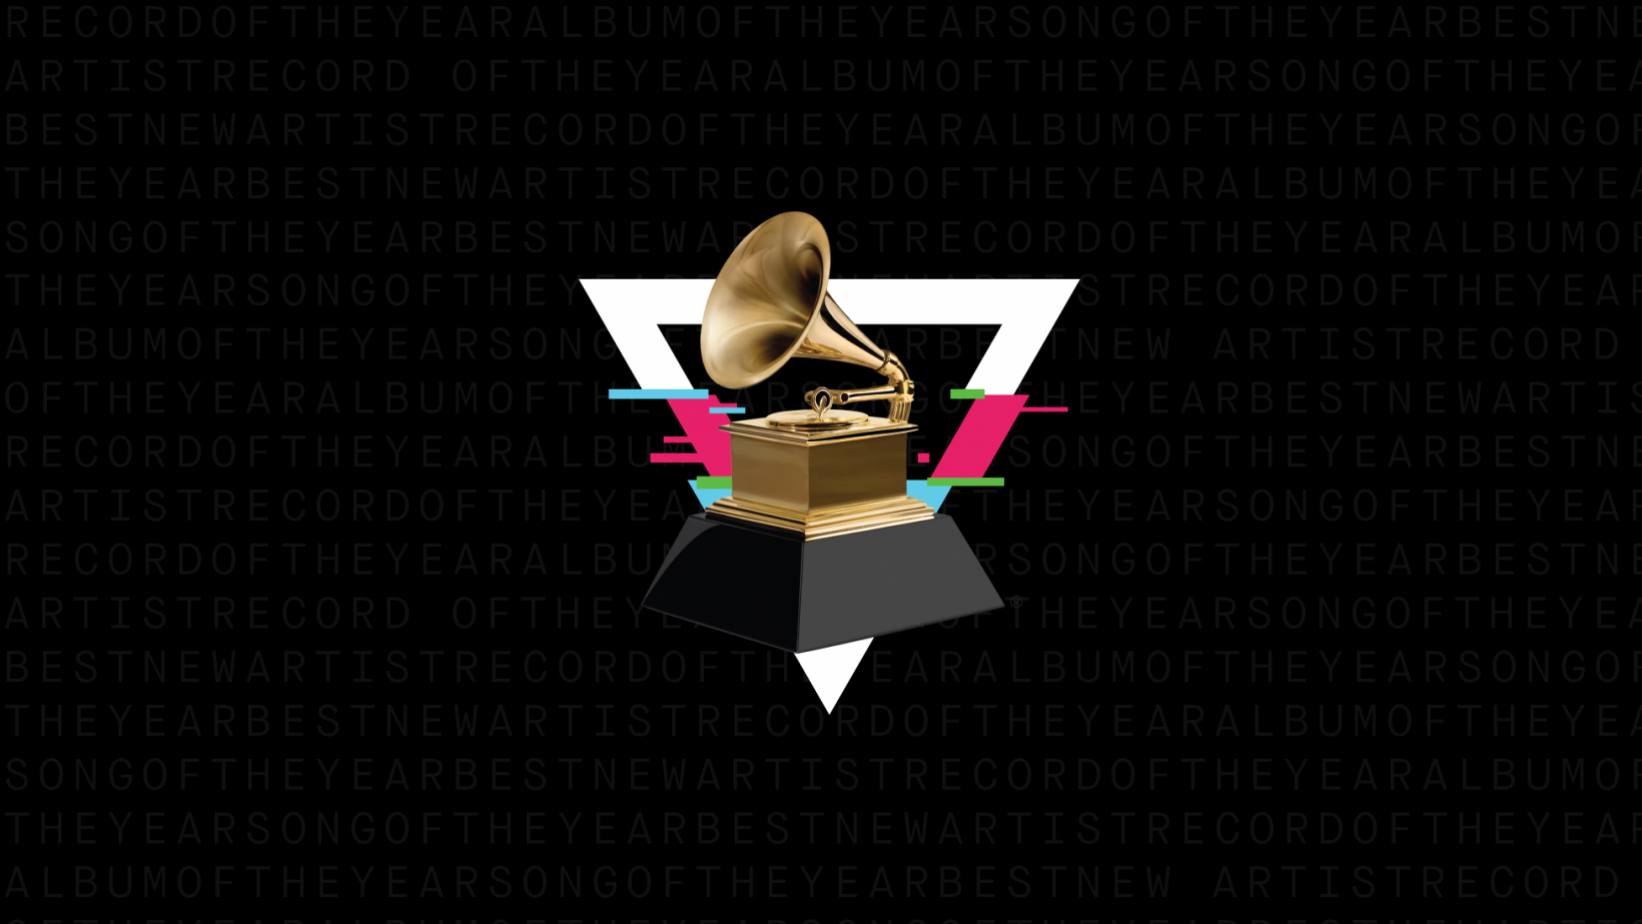 Grammy Awards 2020: Full List of Winners